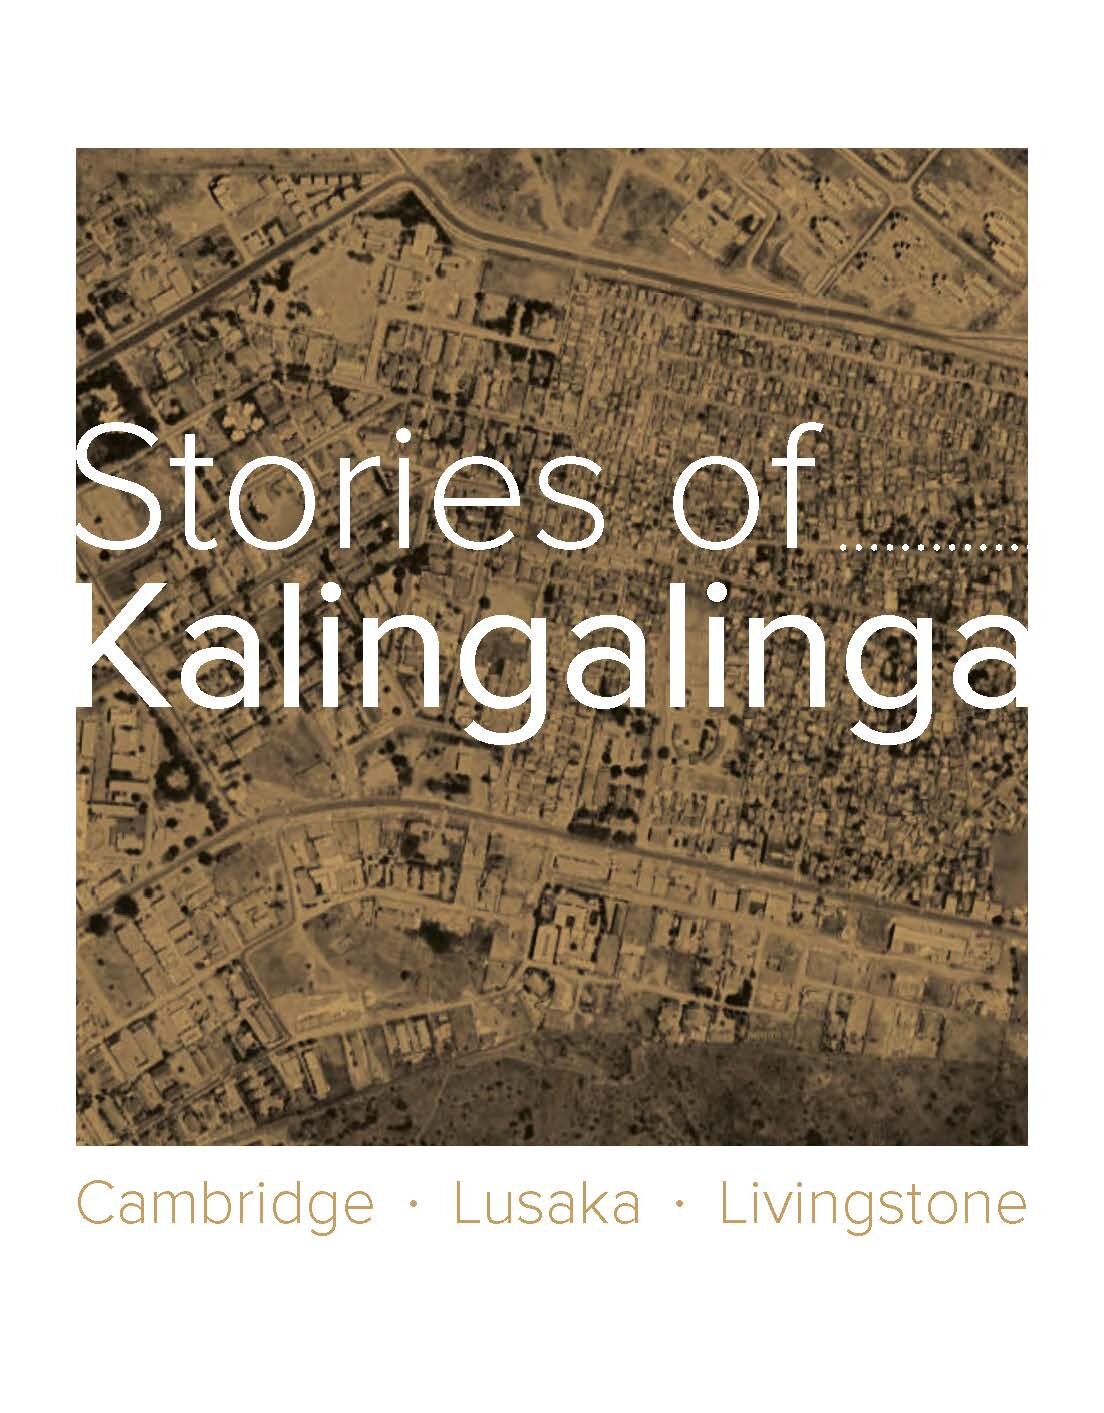 Stories of Kalingalinga catalogue web_Page_01.jpg